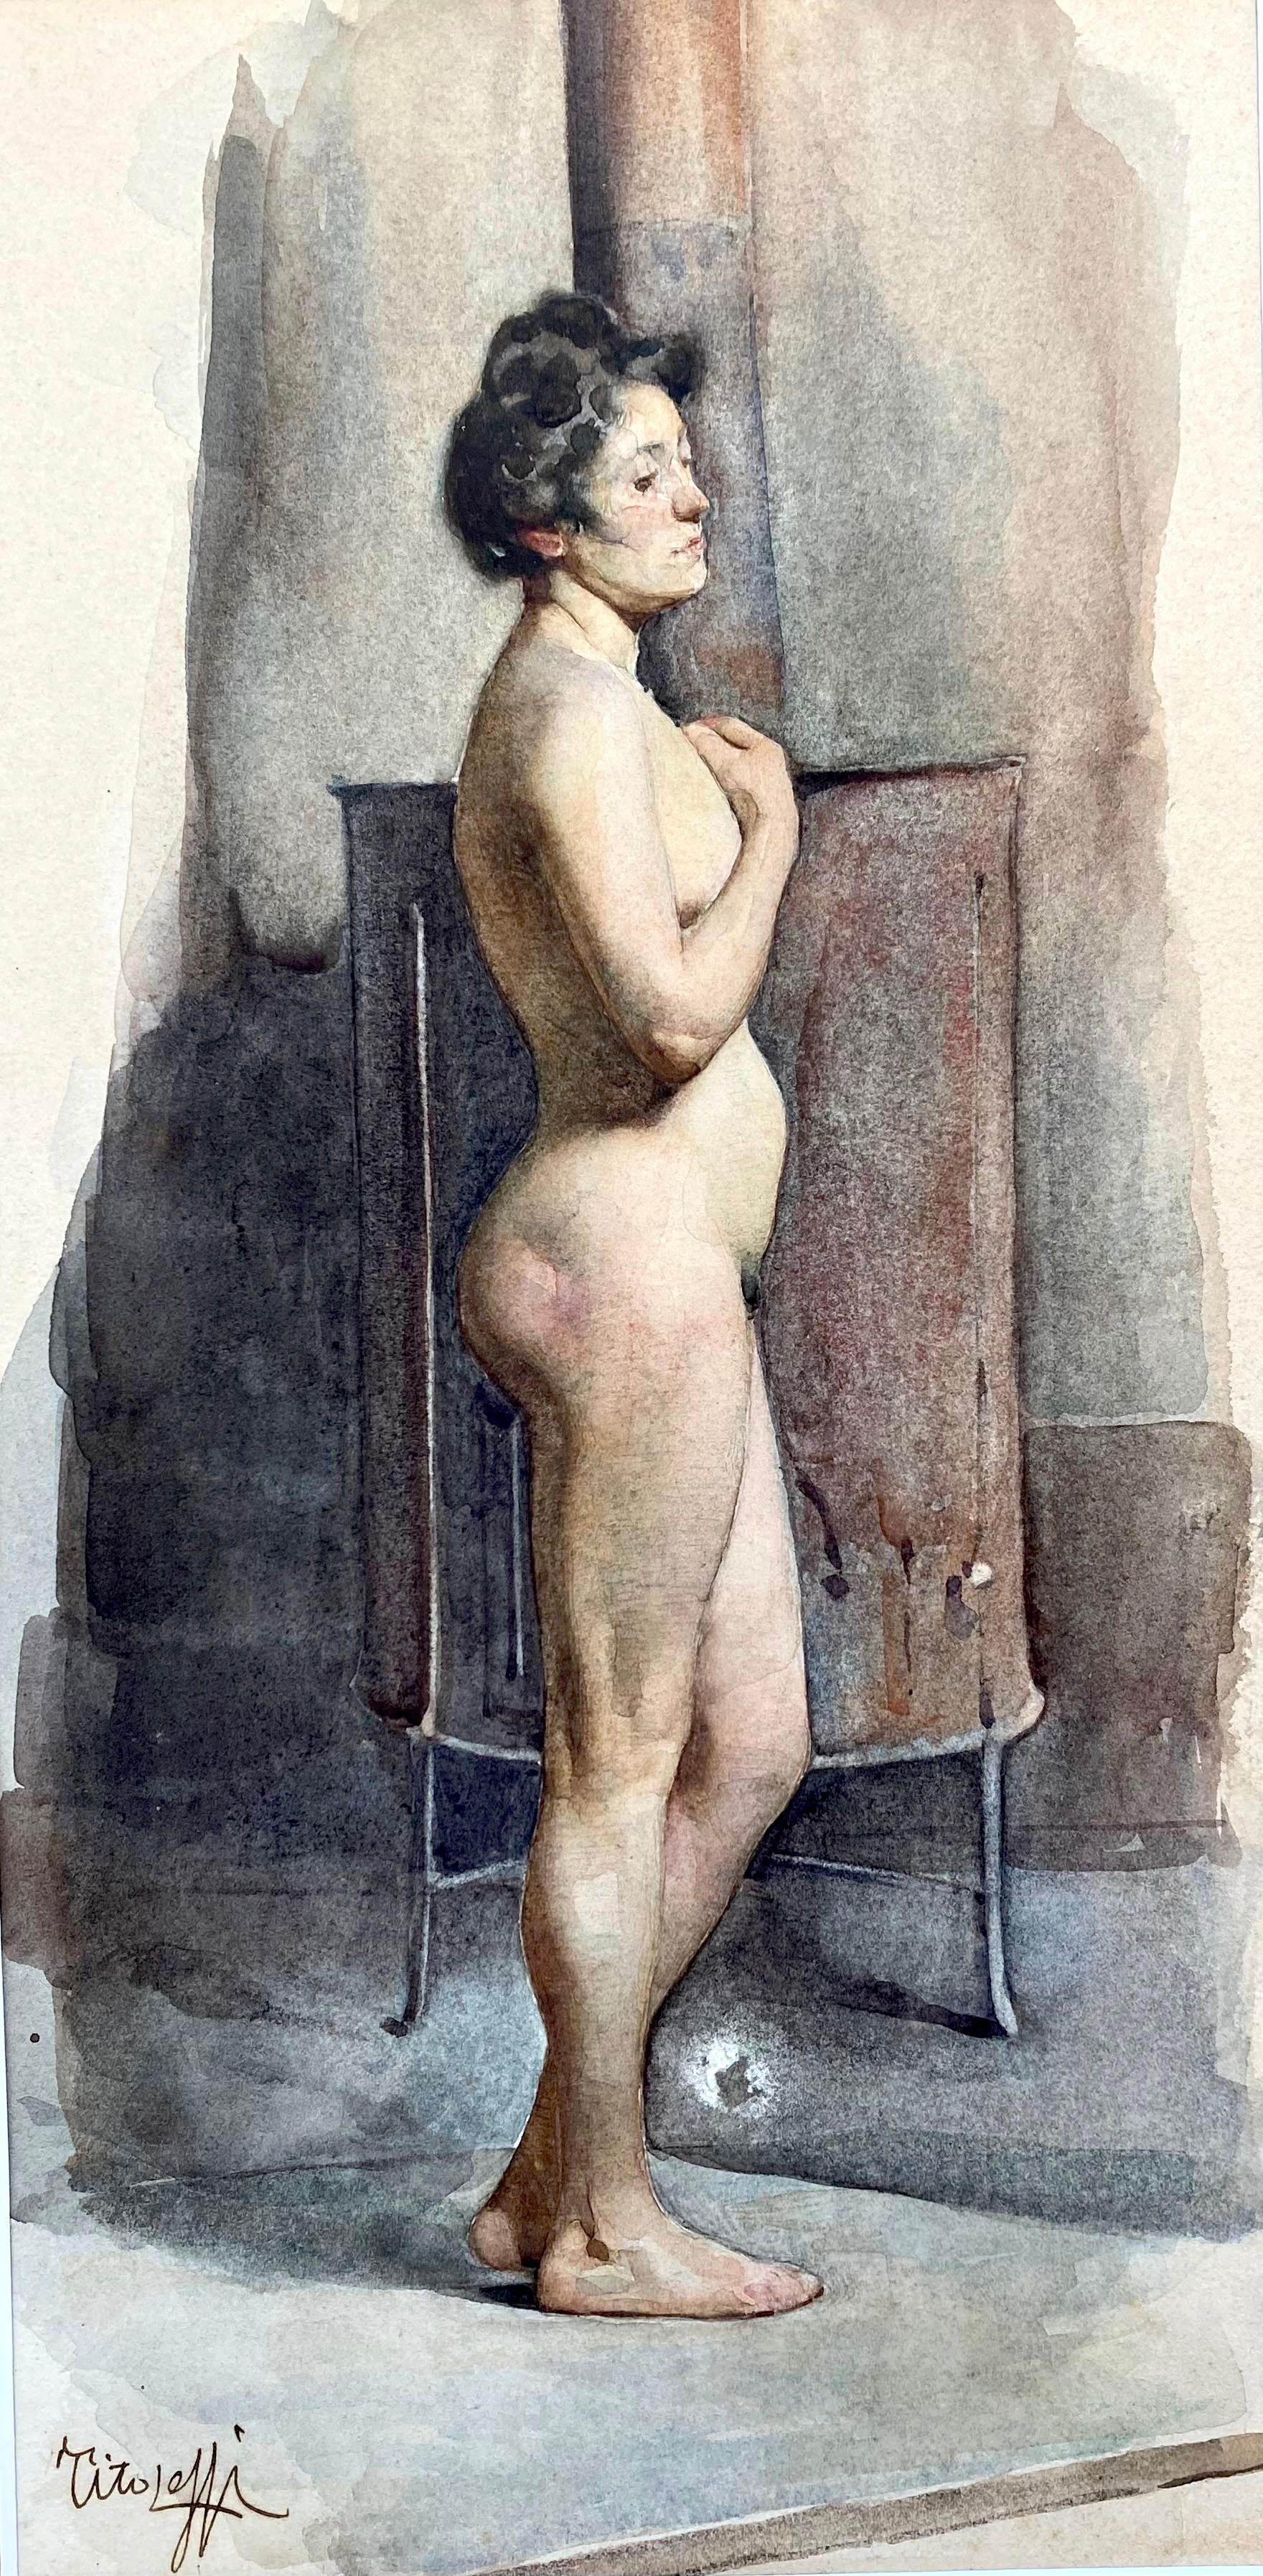 Italienisches Jugendstil-Akt-Boudoir-Gemälde, Boudoir, Frau, die sich in einem Ofen erwärmt, Paris – Art von Tito Lessi